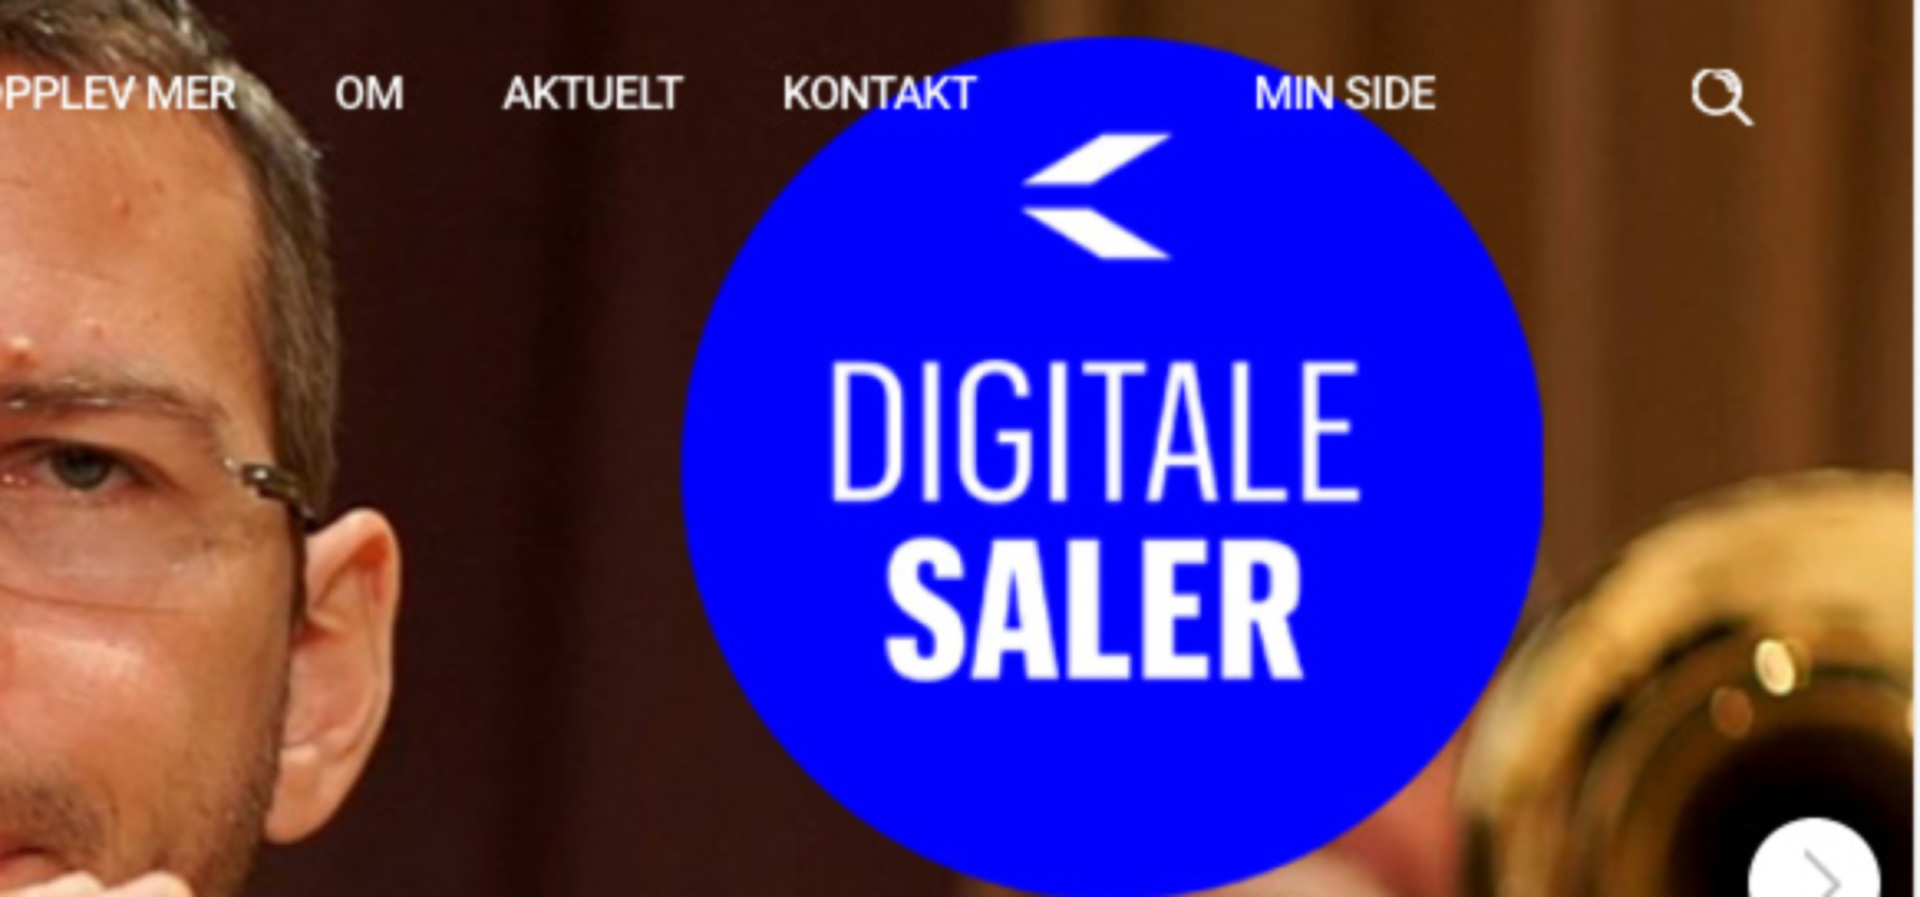 Orkestrene digitaliserer: Kilden i Kristiansand holder sine digitale saler (bildet) åpne, i likhet med de andre orkestrene. 